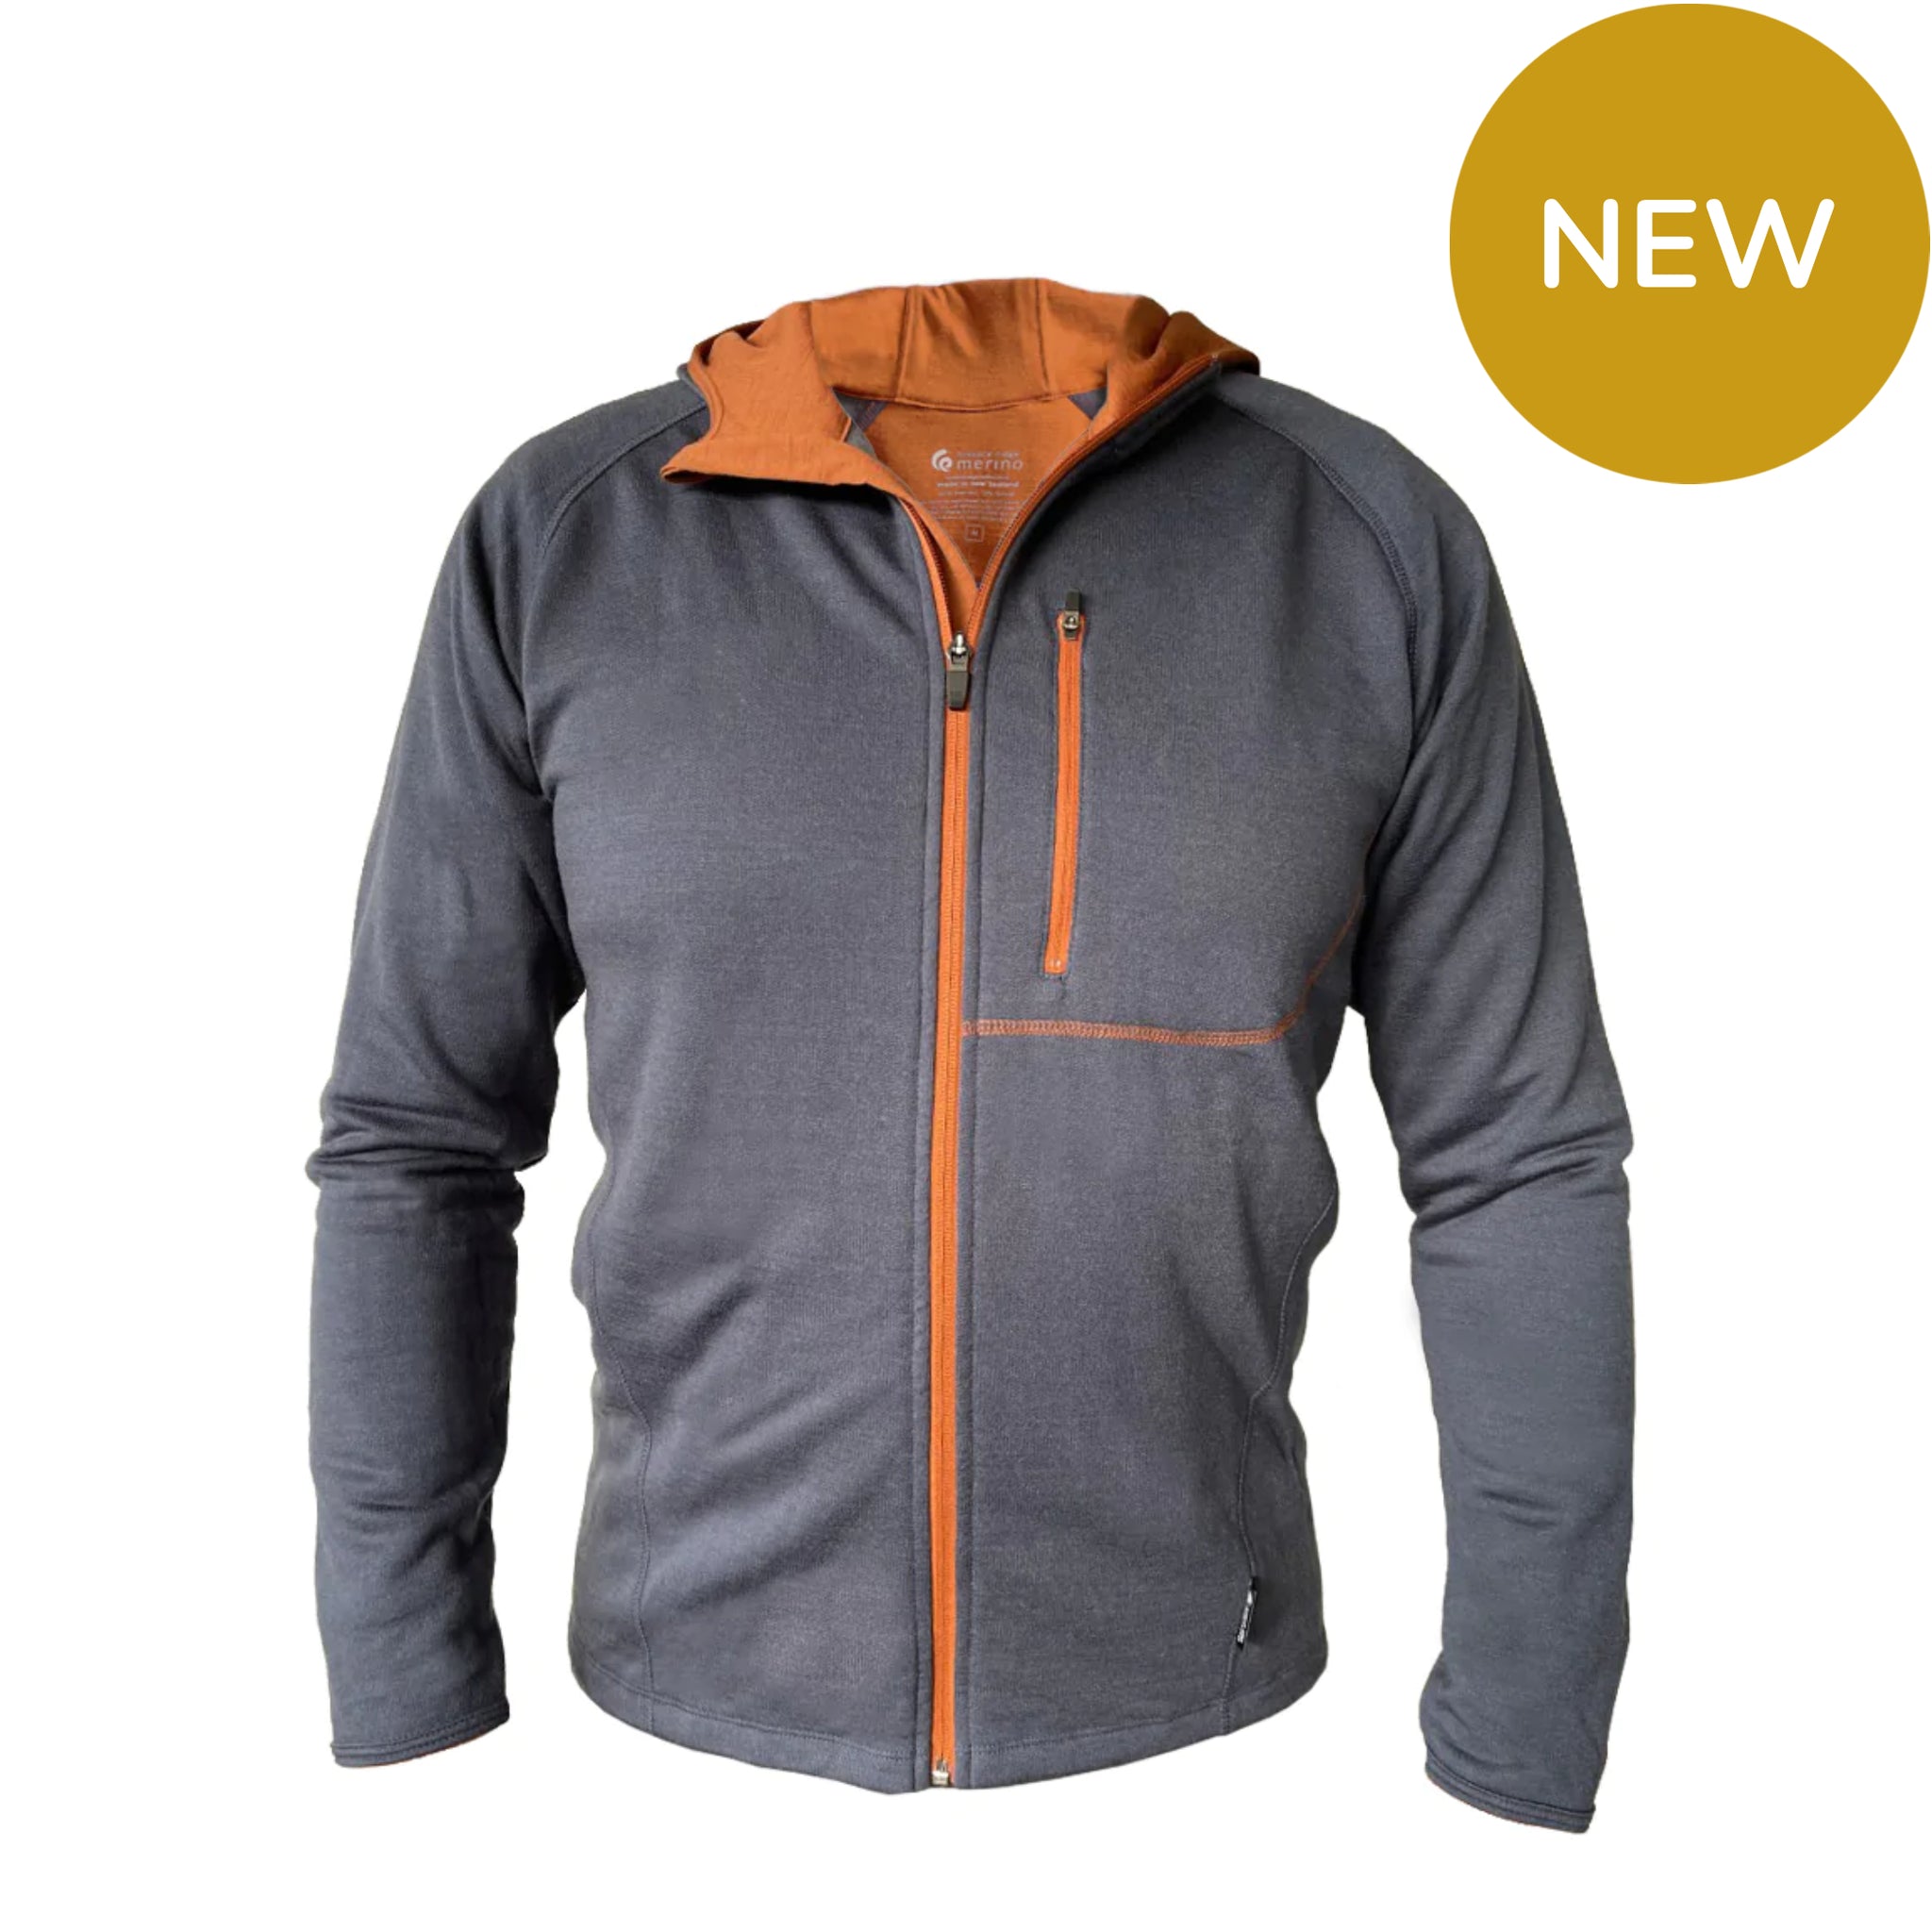 Merino/Tencel Men's Full Zip Jacket with Hood. Made in New Zealand